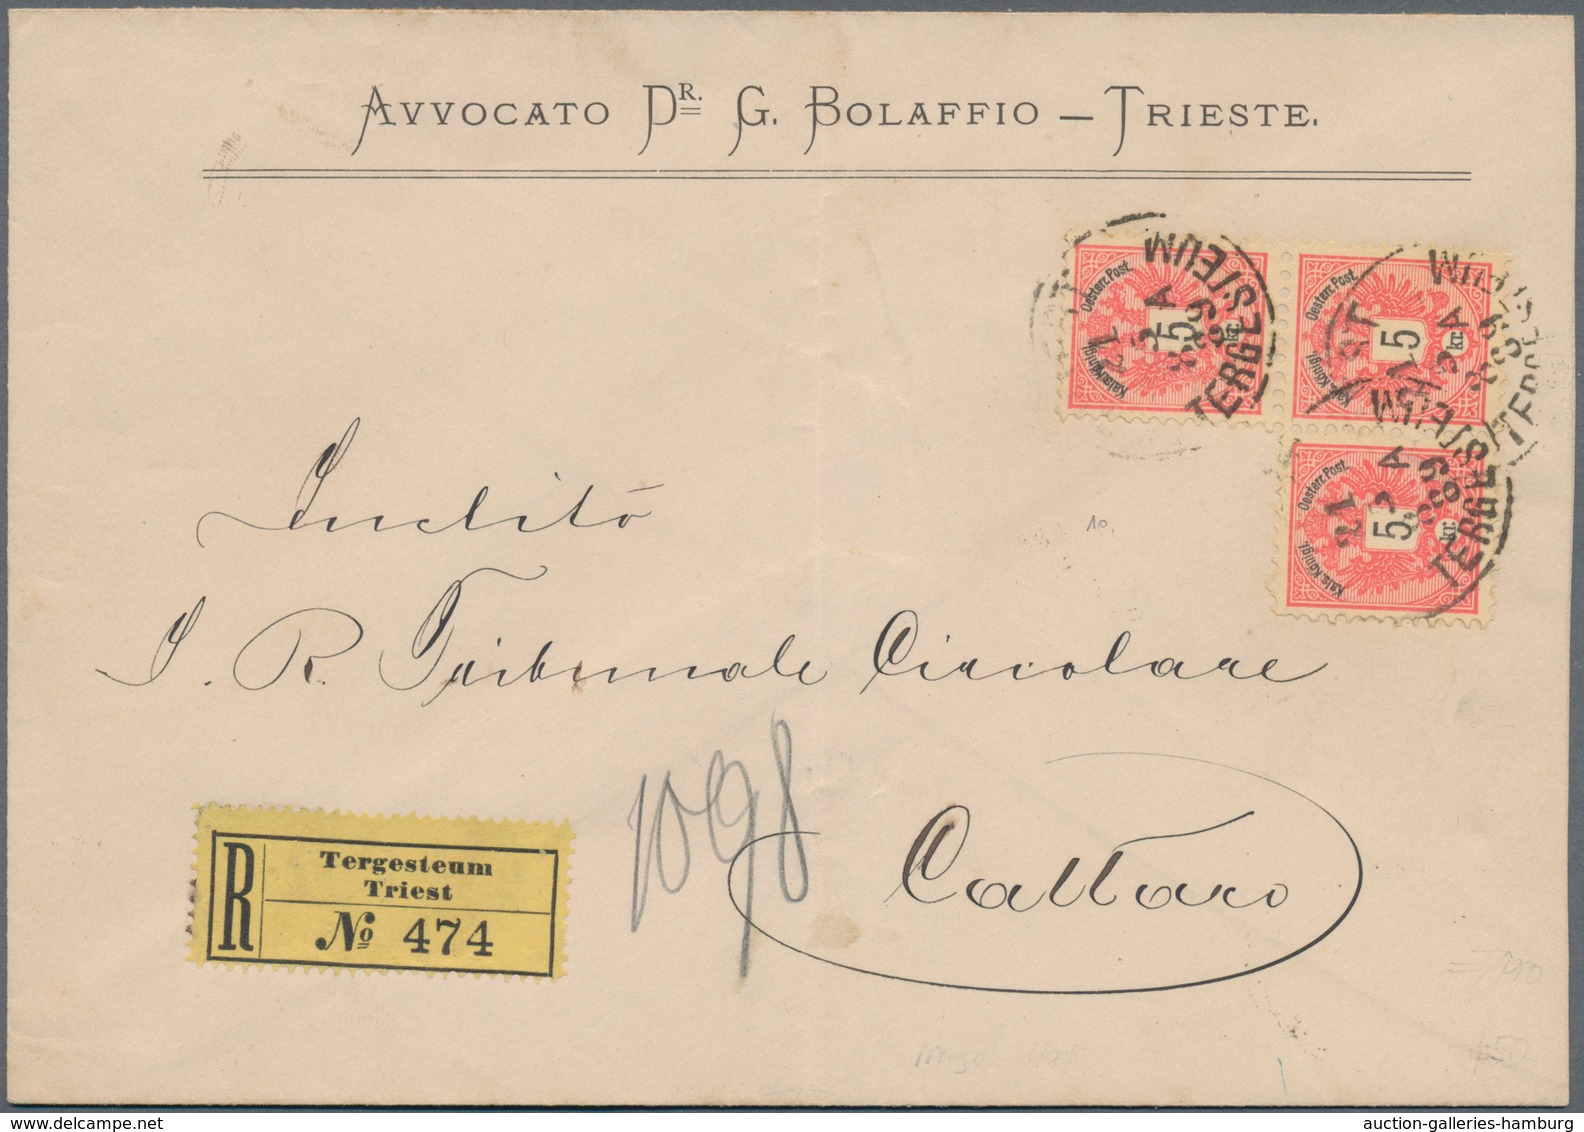 Österreich: 1830/1920 (ca.), Partie von ca. 56 Belegen, dabei etliche markenlose Briefe/Postscheine